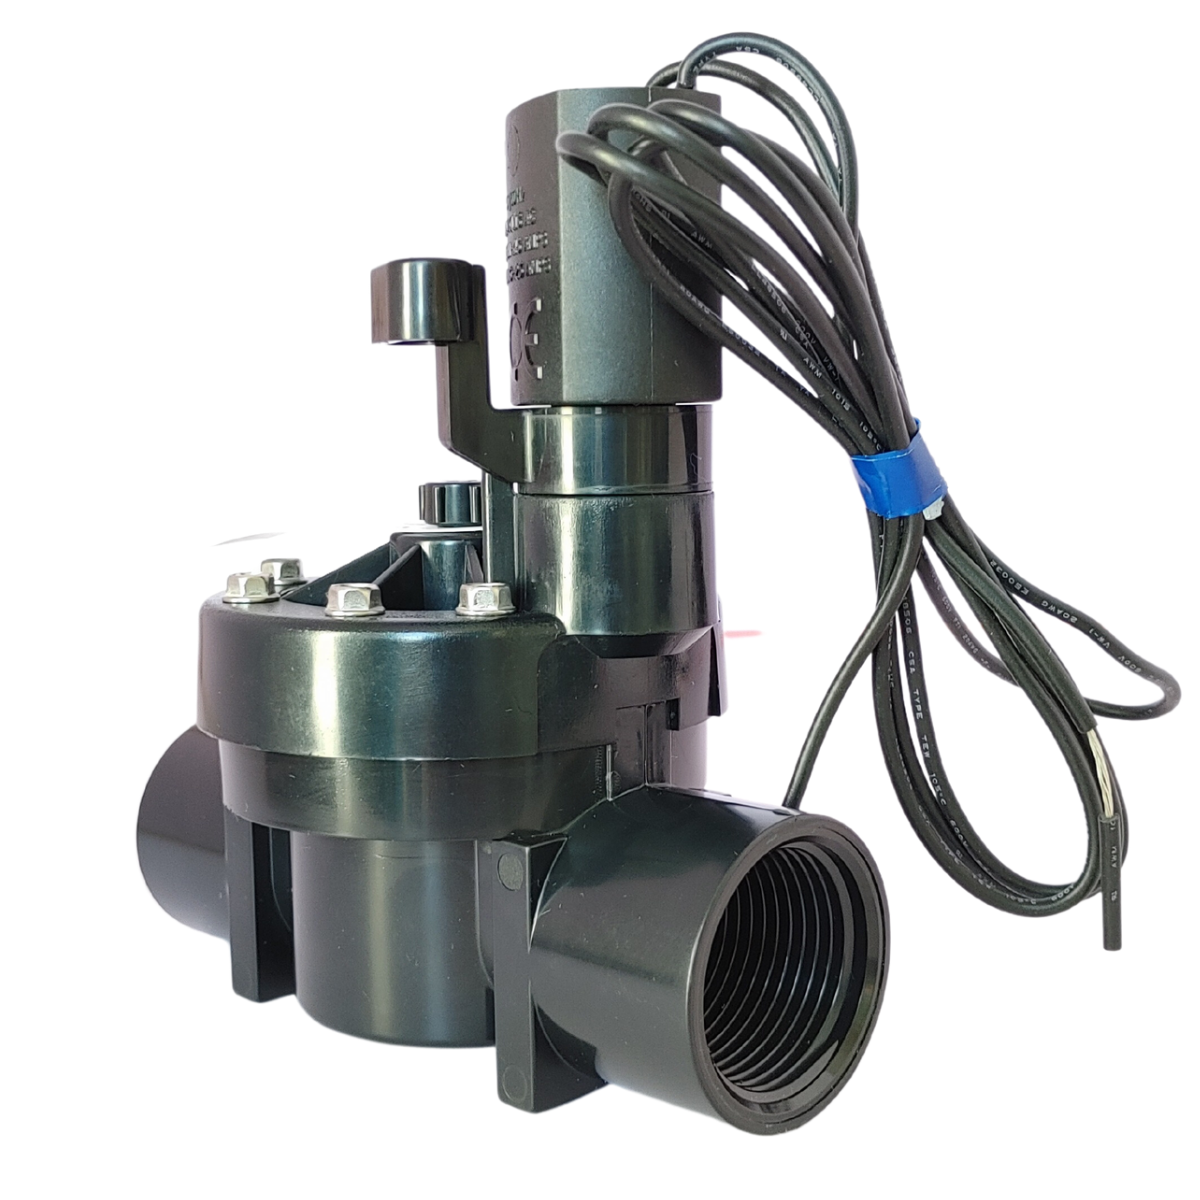 Válvula Elétrica Solenoide Pro 150 Irrigação 1" Bsp K-rain - 4